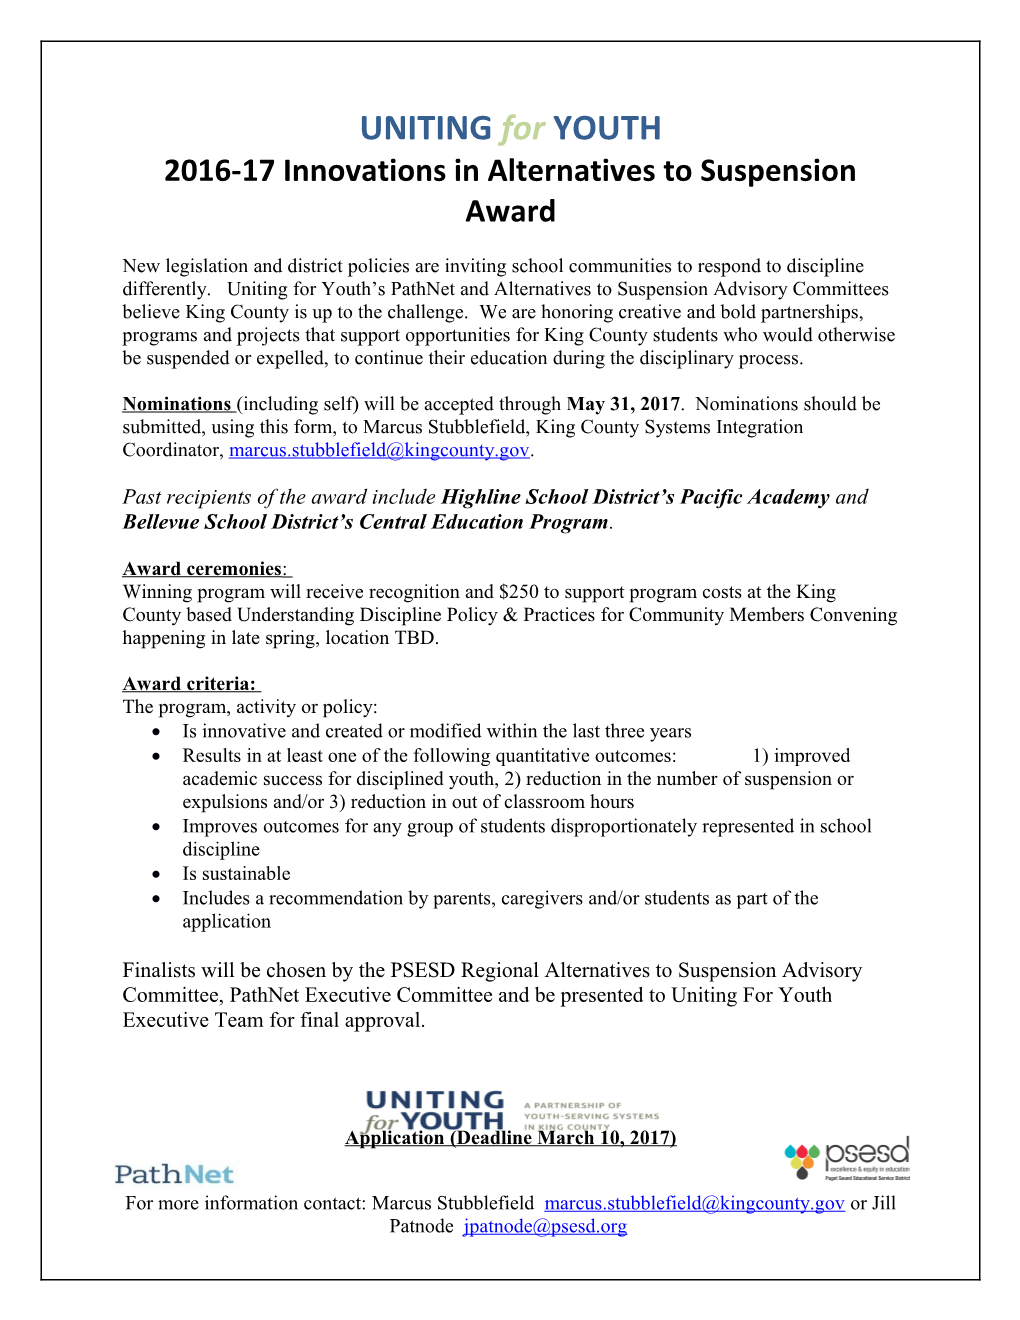 2016-17 Innovations in Alternatives to Suspension Award